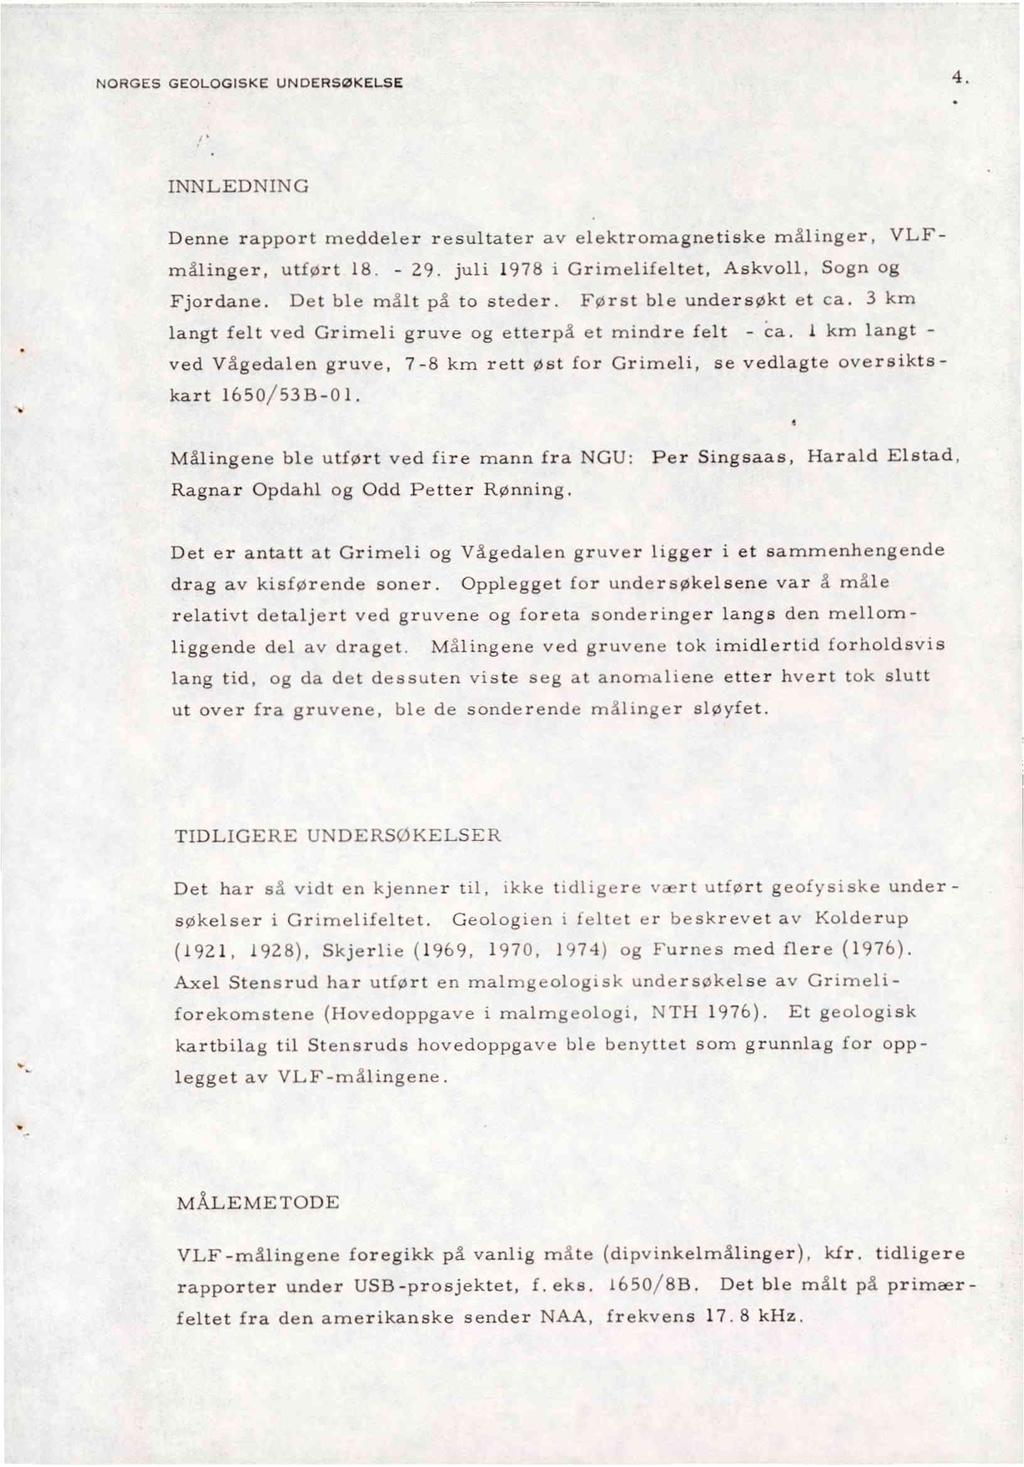 NORGES GEOLOGISKE UNDERSØKELSE 4. INNLEDNING Denne rapport meddeler resultater av elektromagnetiske målinger, VLFmålinger, utført 18. - 29. juli 1978 i Grimelifeltet, Askvoll, Sogn og Fjordane.